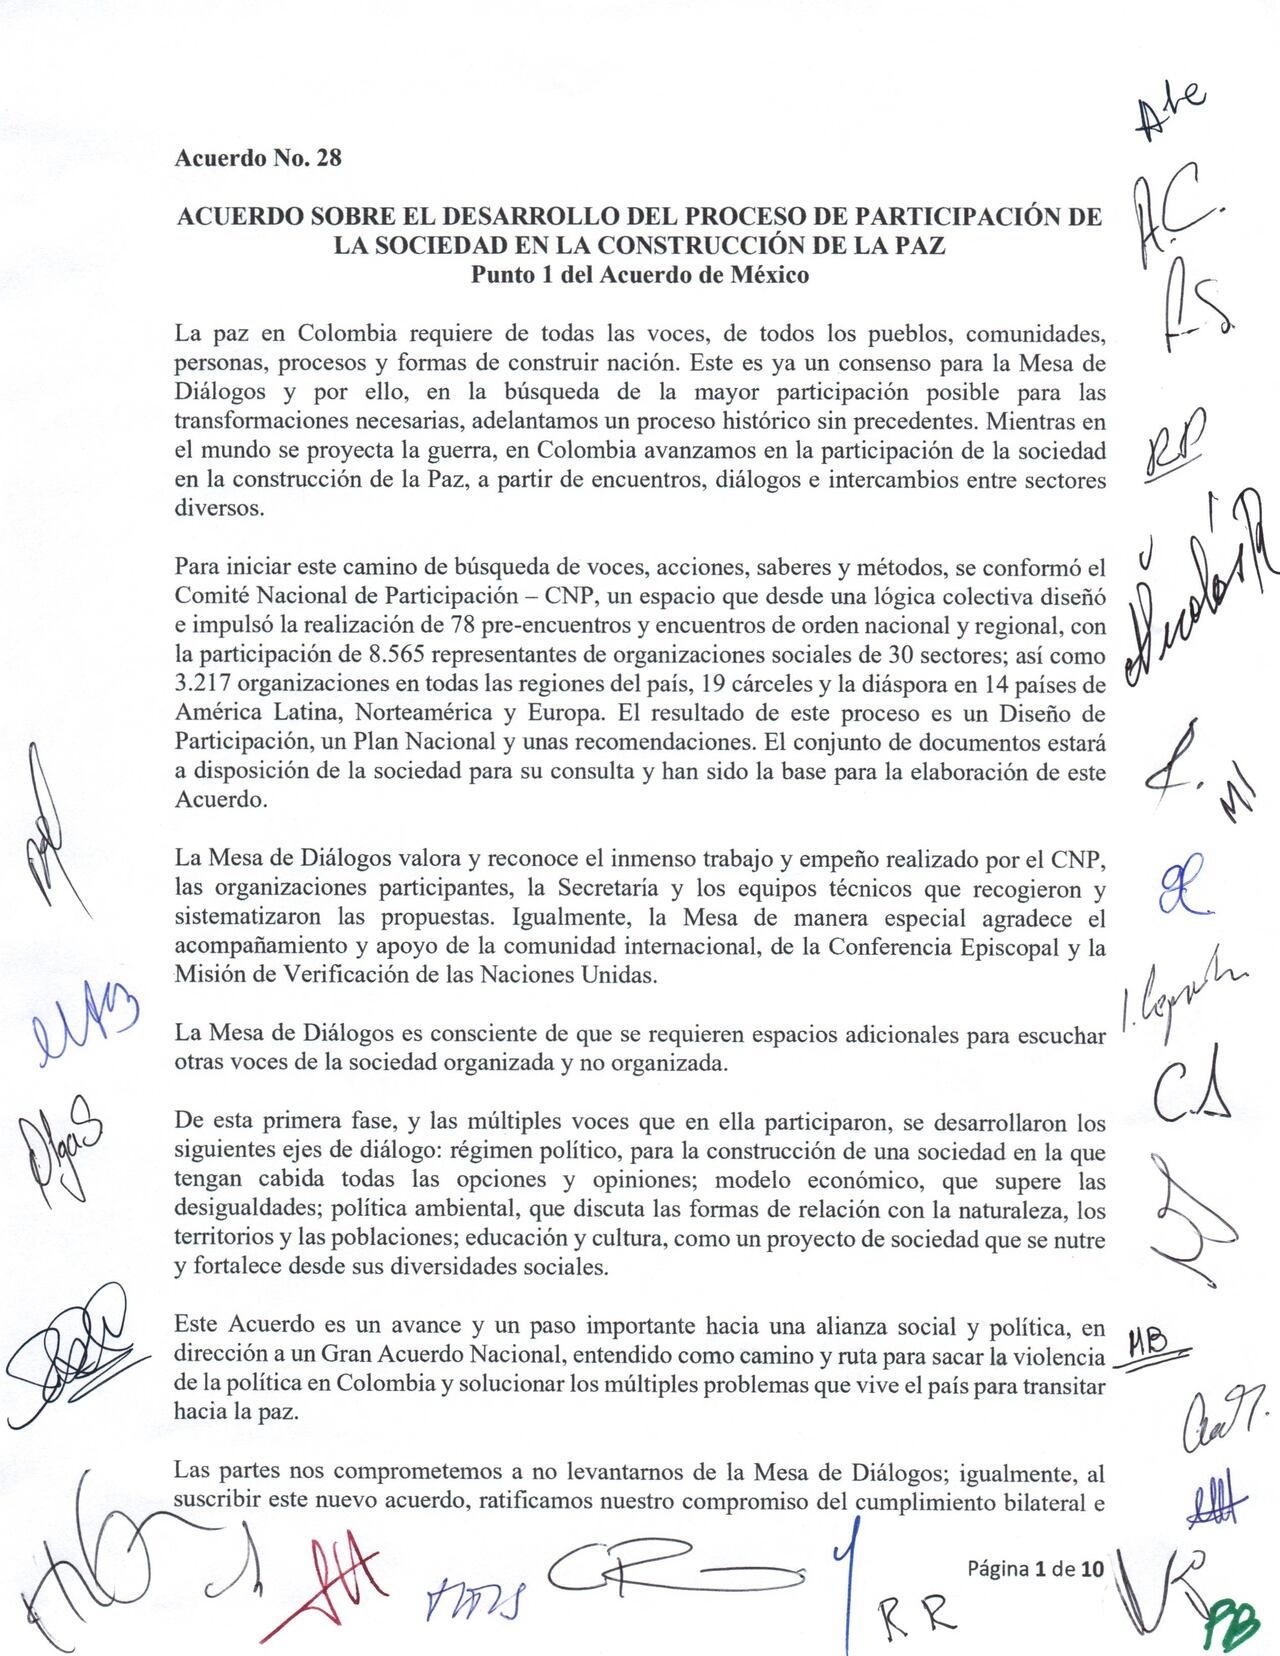 Primer página del Acuerdo sobre el proceso de participación de la sociedad civil en la construcción de la paz entre Colombia y el ELN.